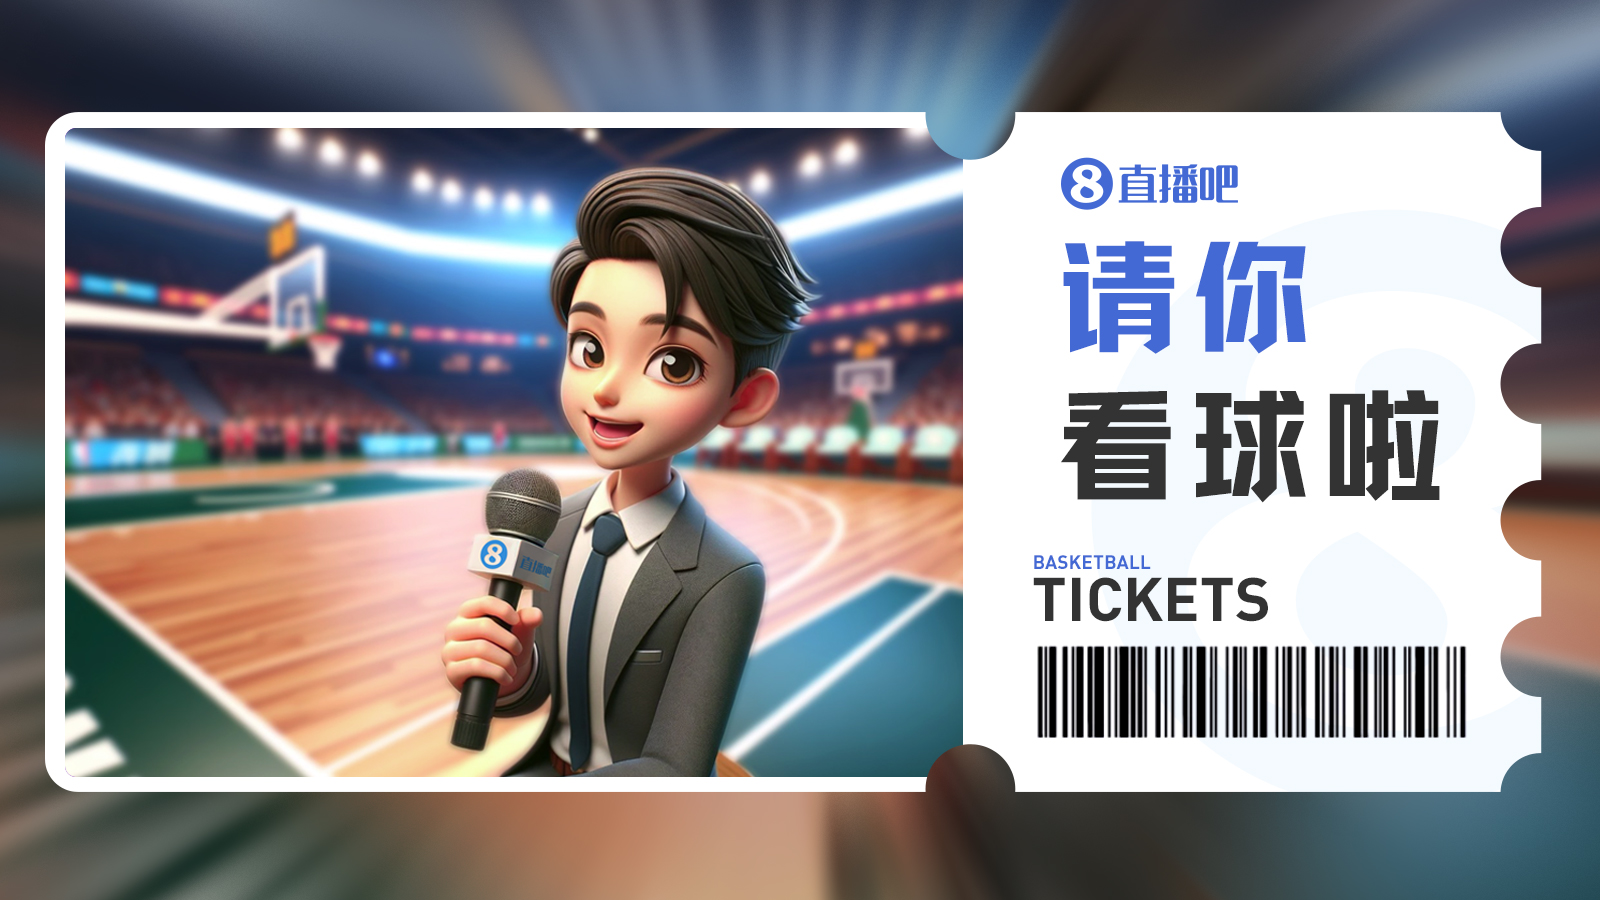 直播吧送CBA门票啦留言抽3月28日上海vs新疆免费门票